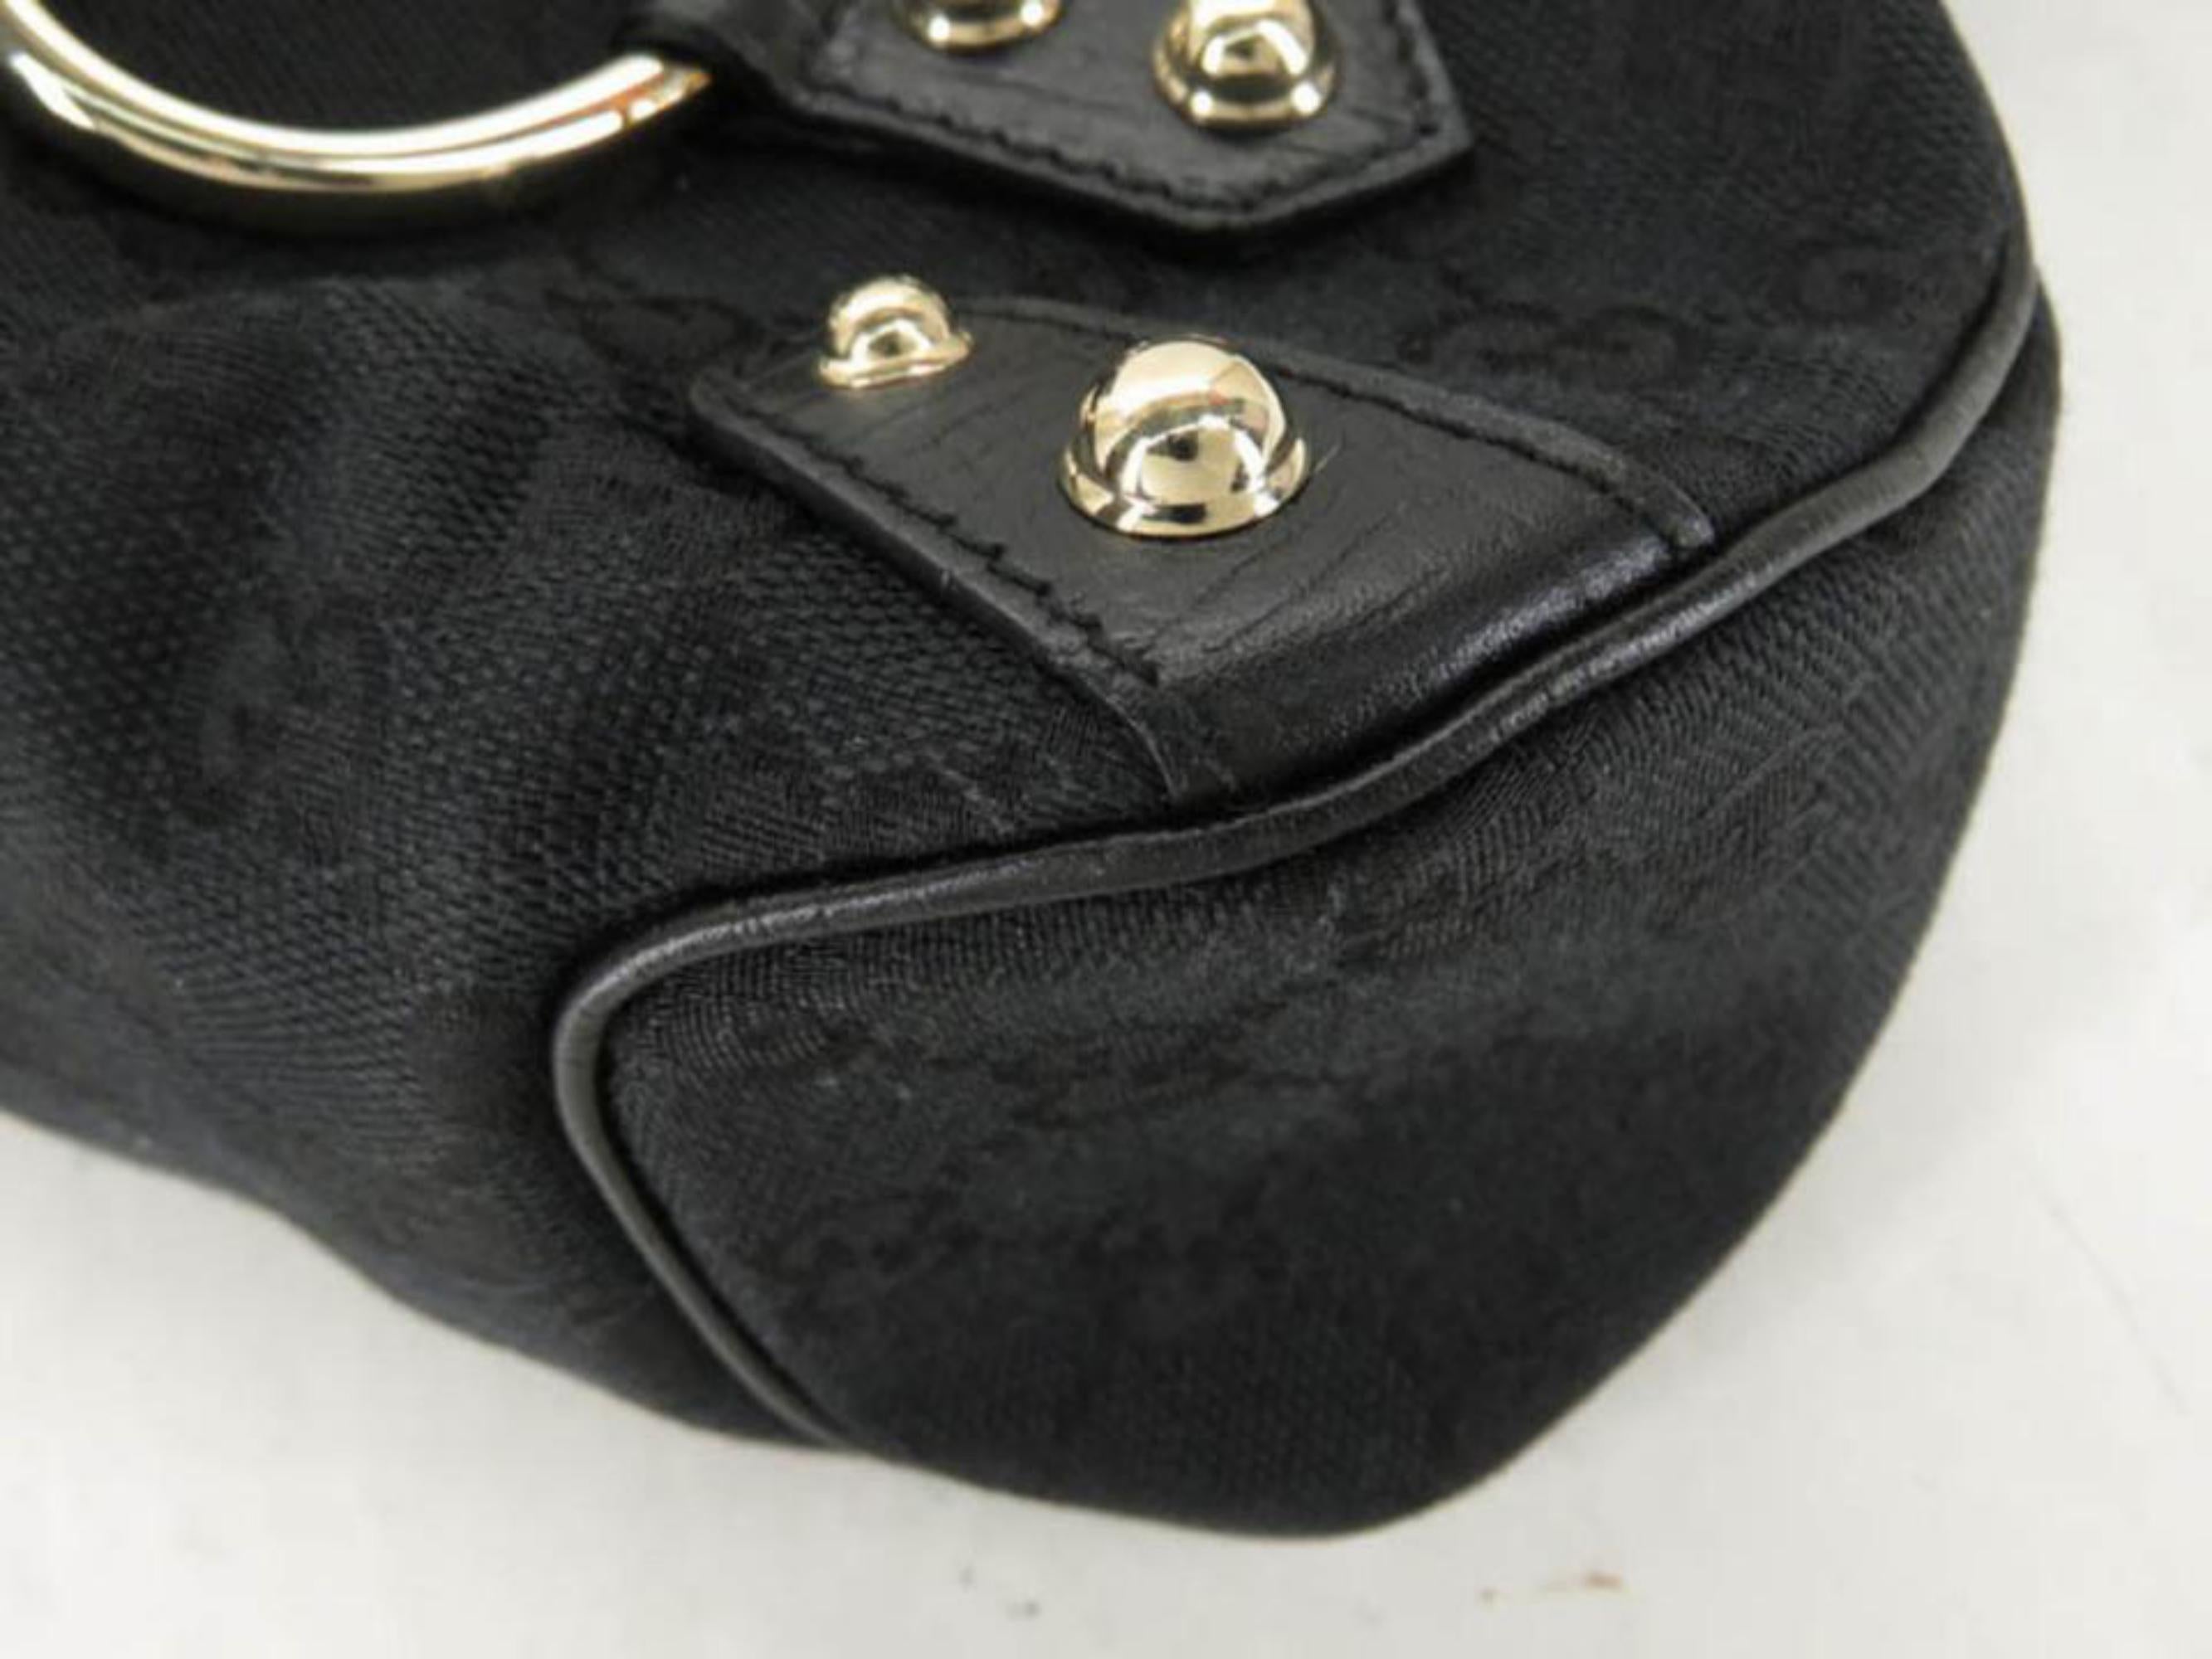 Gucci Horsebit Sherry Web Chain Flap 867901 Black Canvas Shoulder Bag For Sale 4